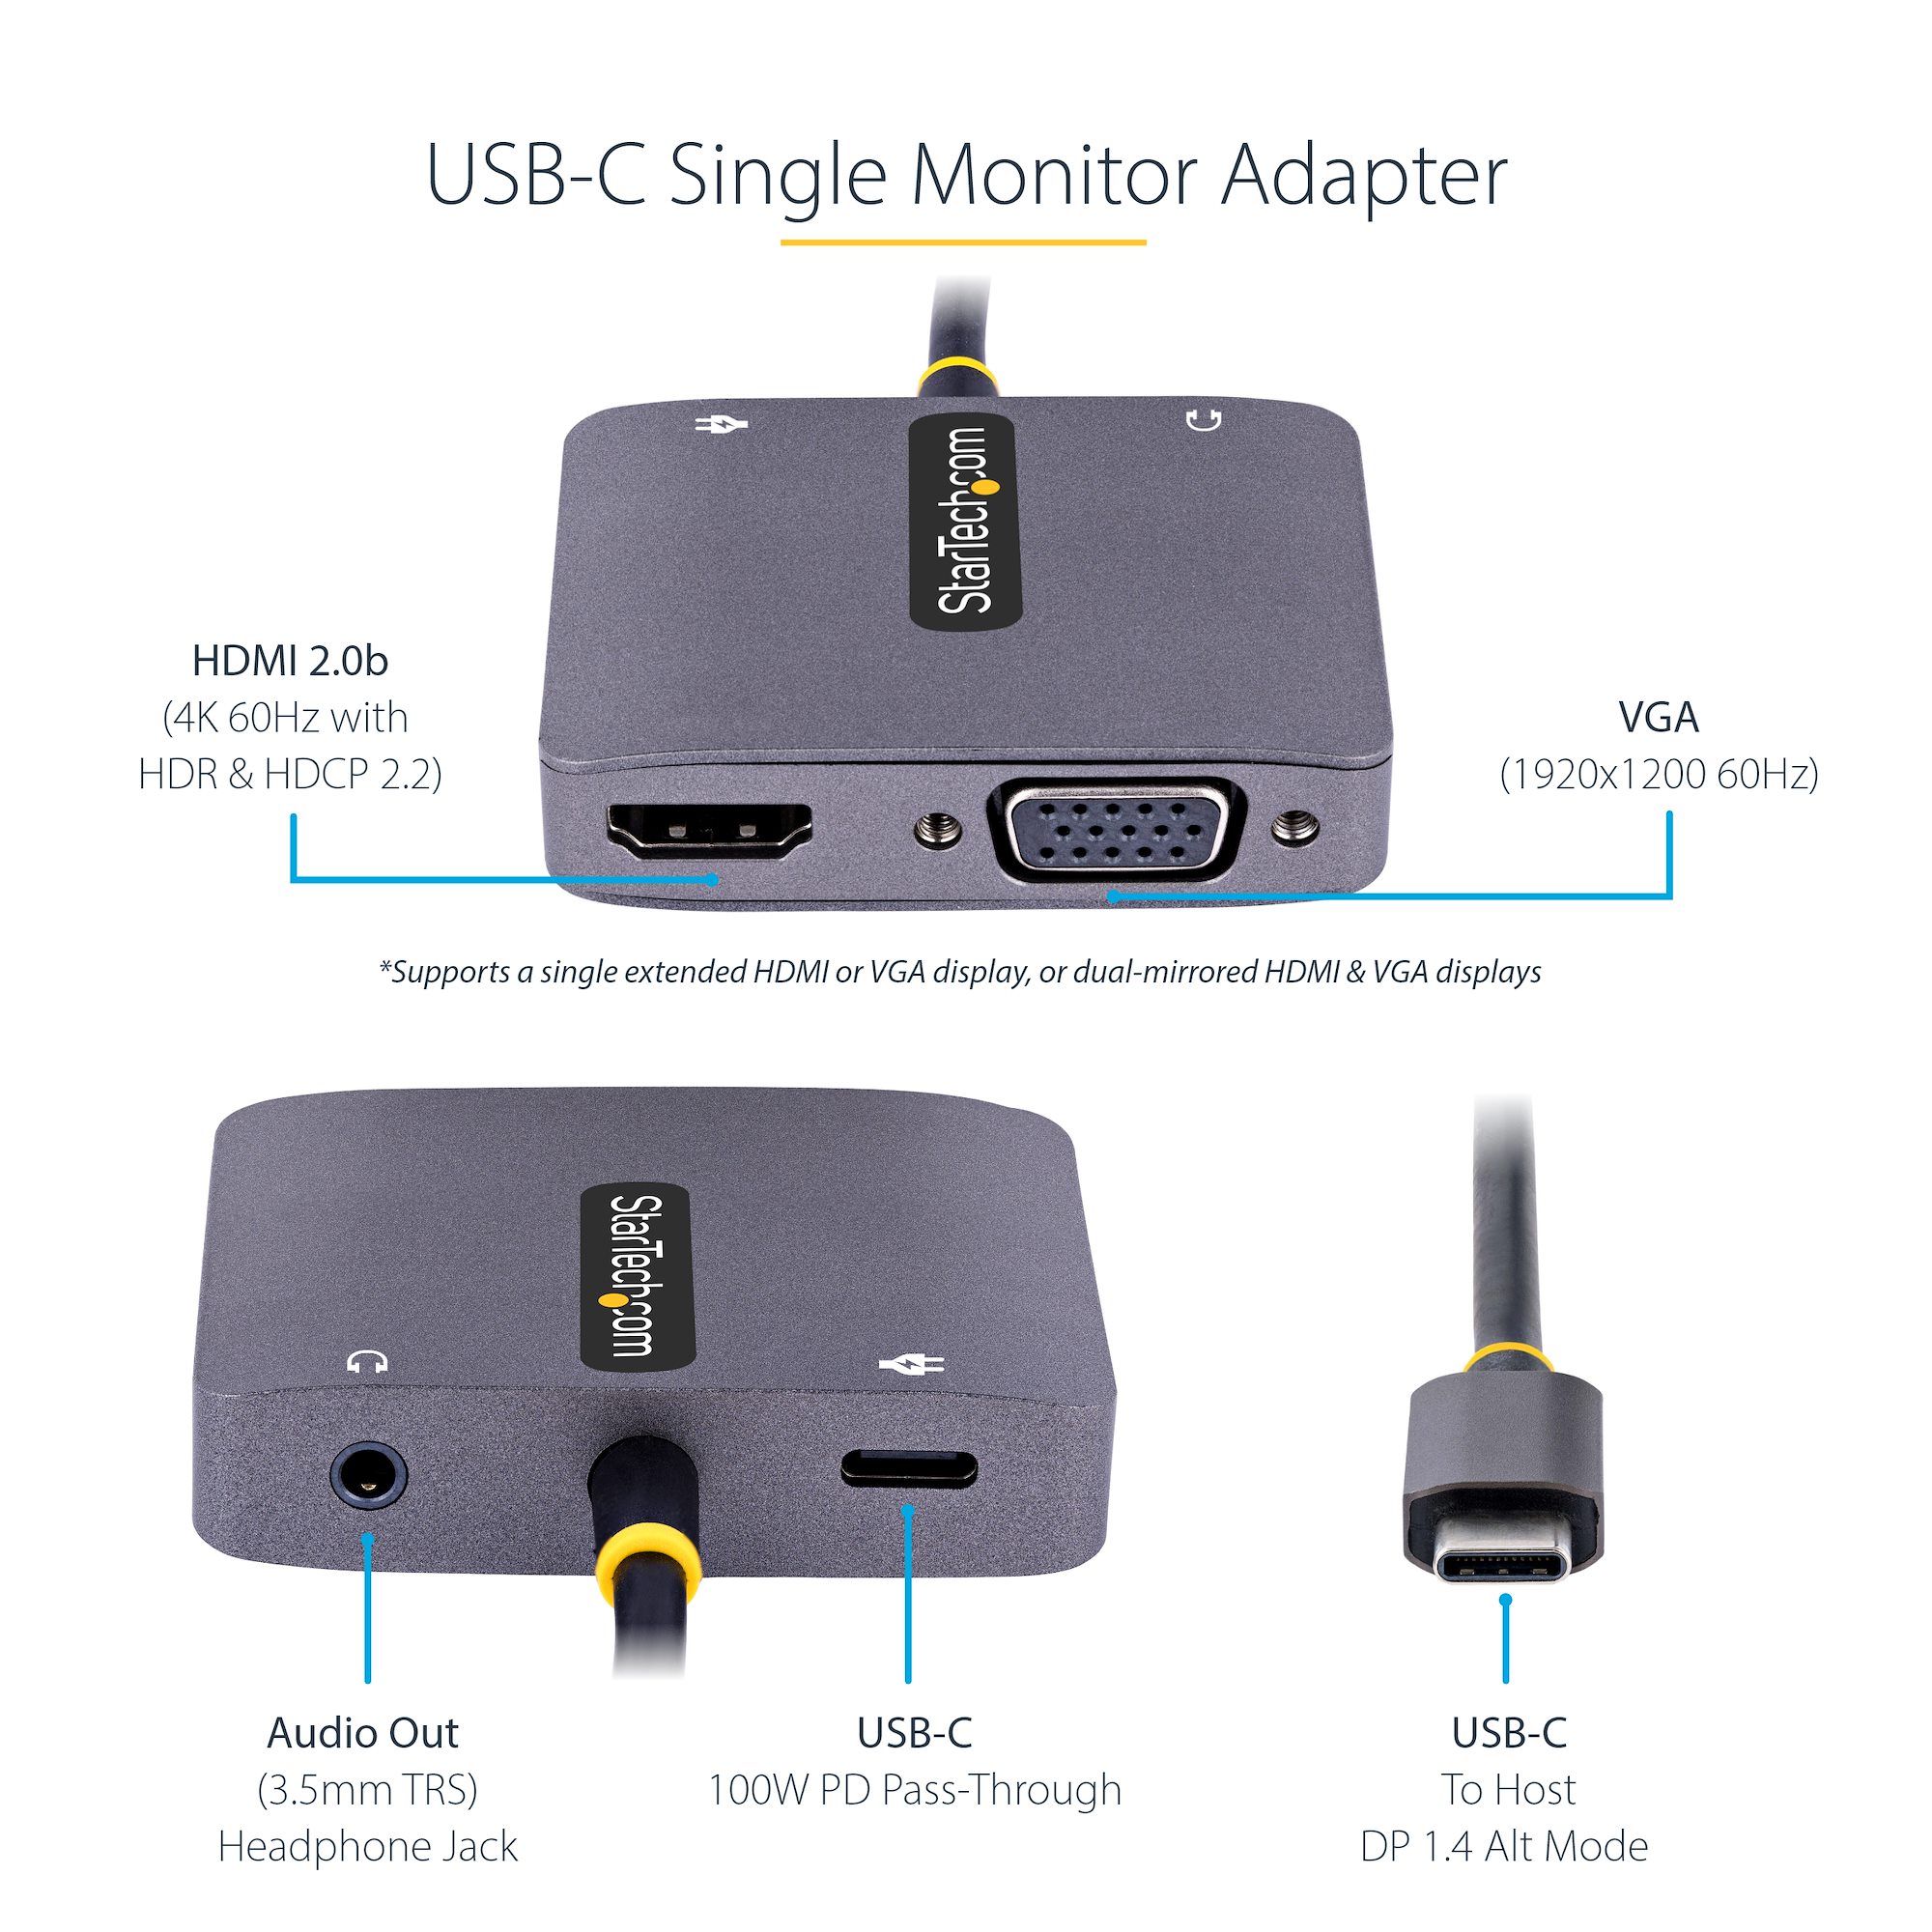 Adaptateur USB 3 en 1 vers HDMI / VGA / Entrée Audio Jack 3.5mm - Noir -  Français